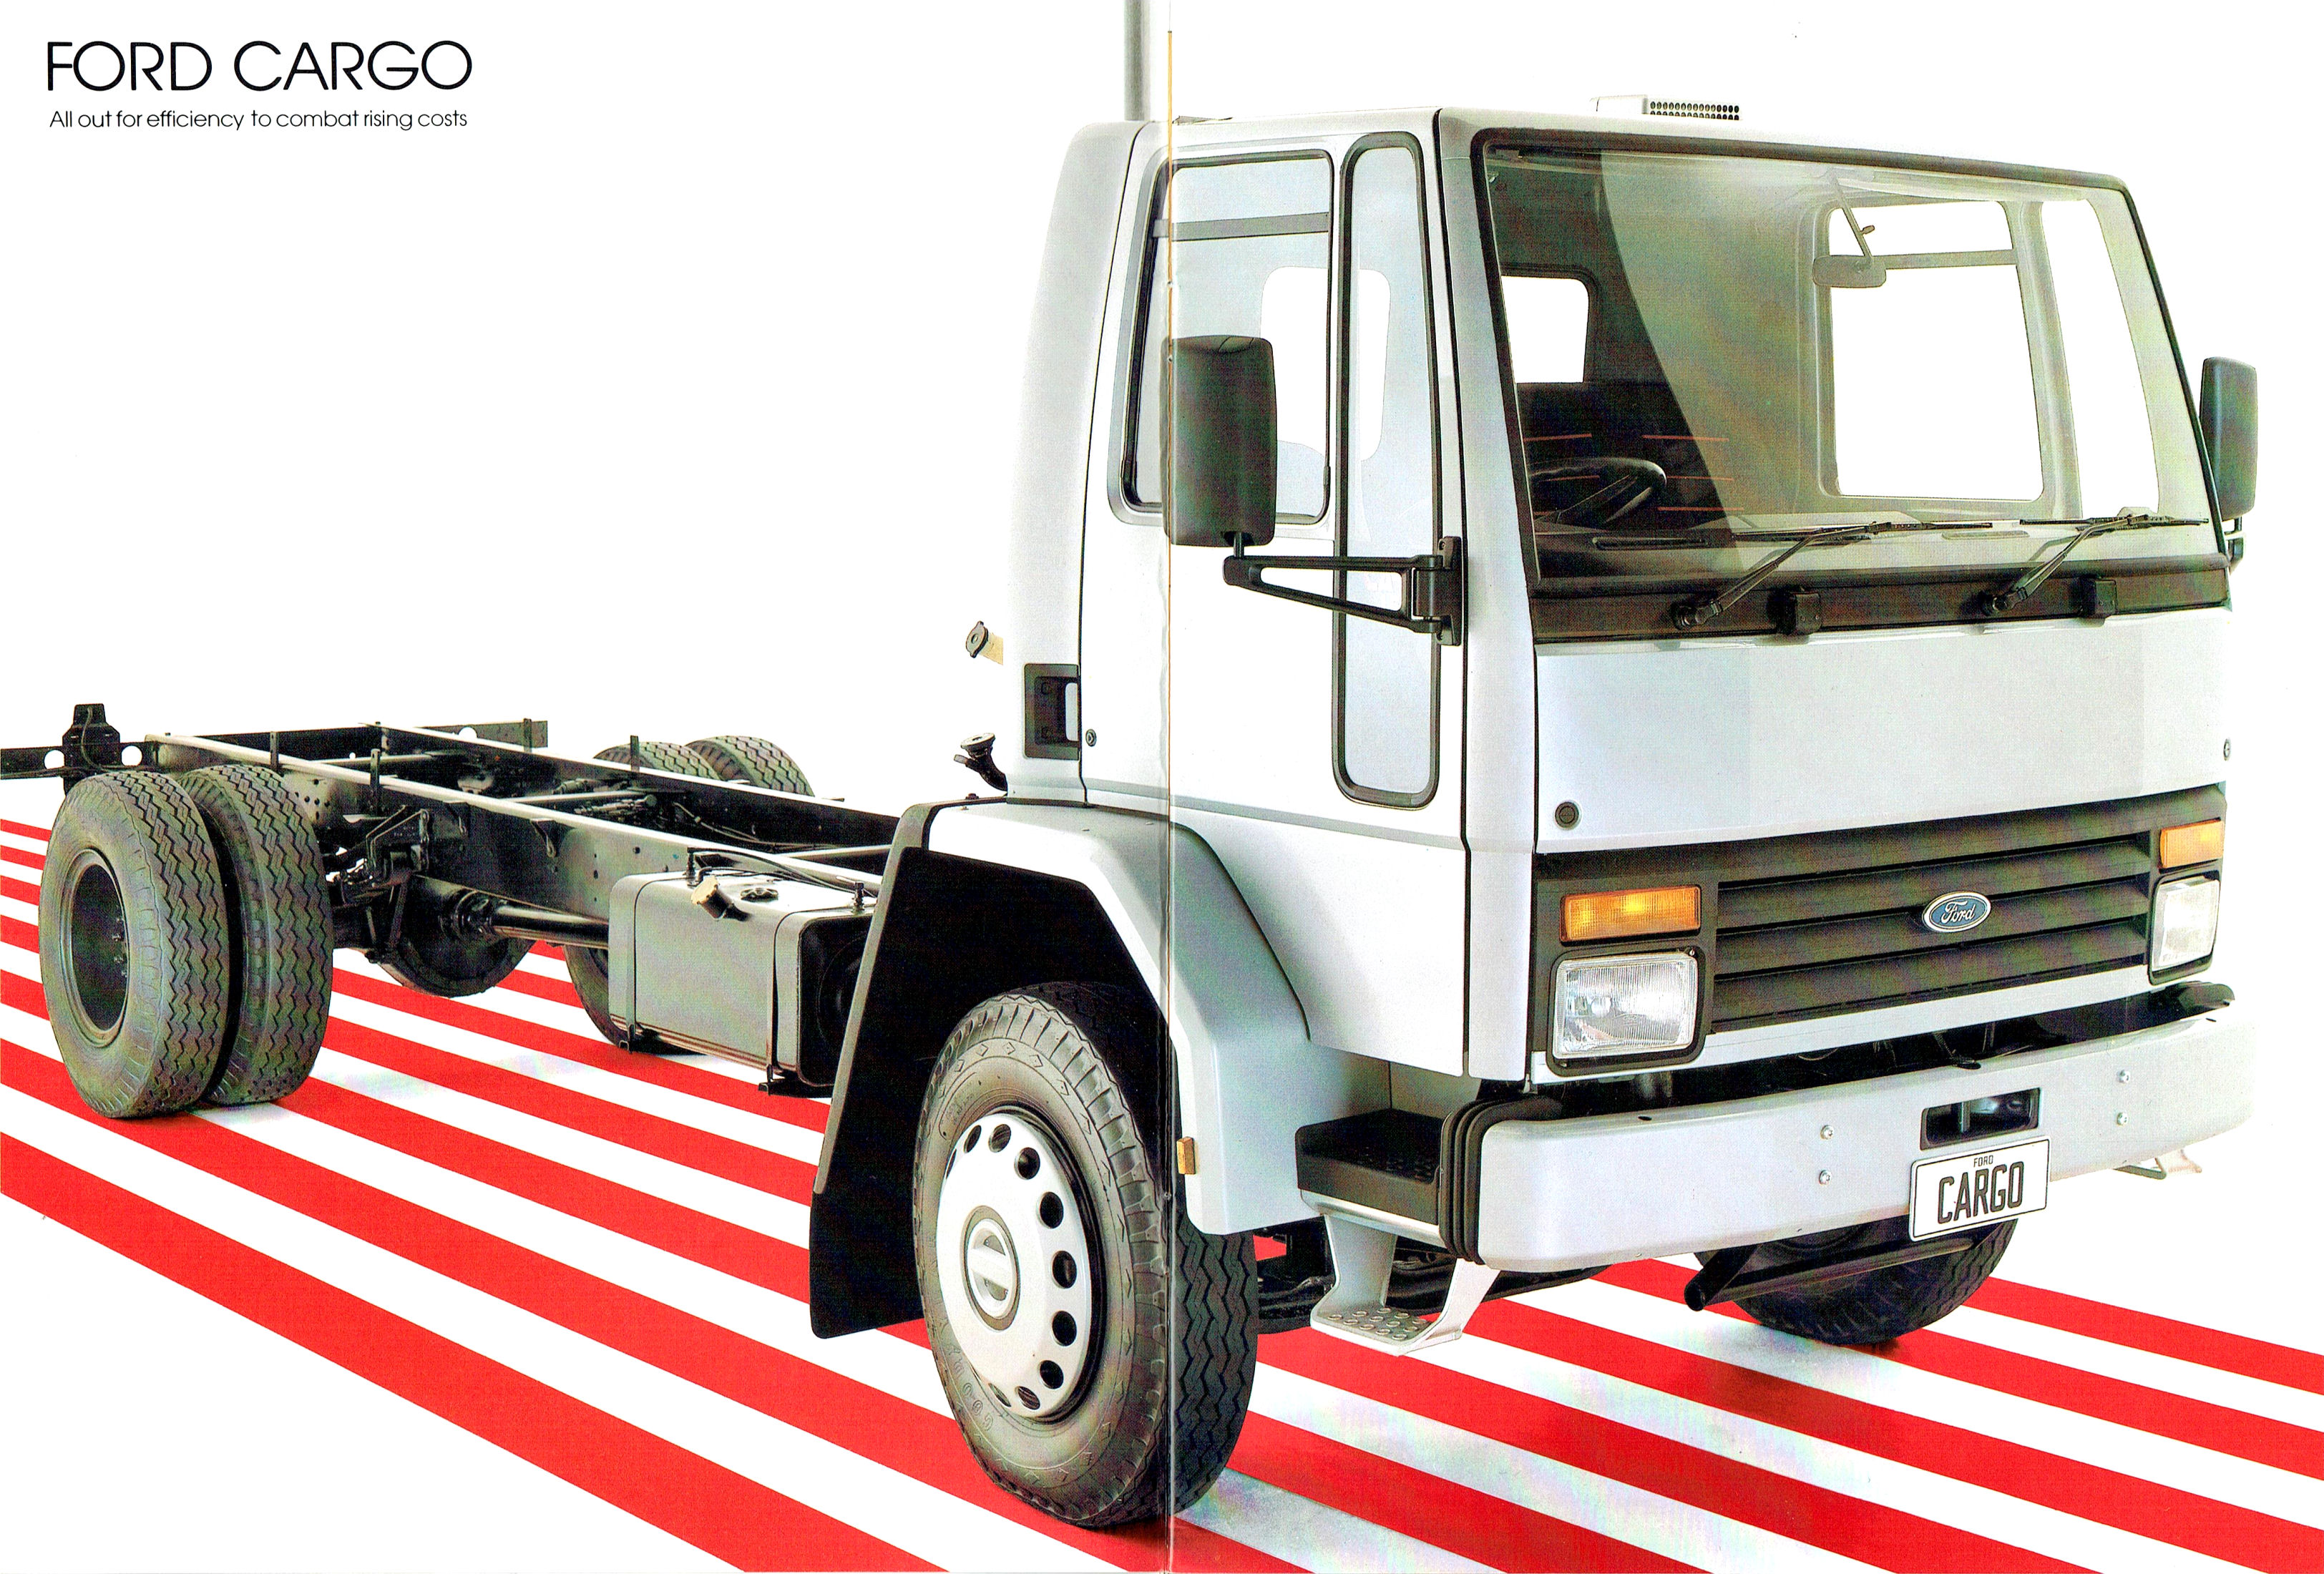 1981 Ford Cargo Trucks (Aus)-02-03.jpg-2022-12-7 13.40.47